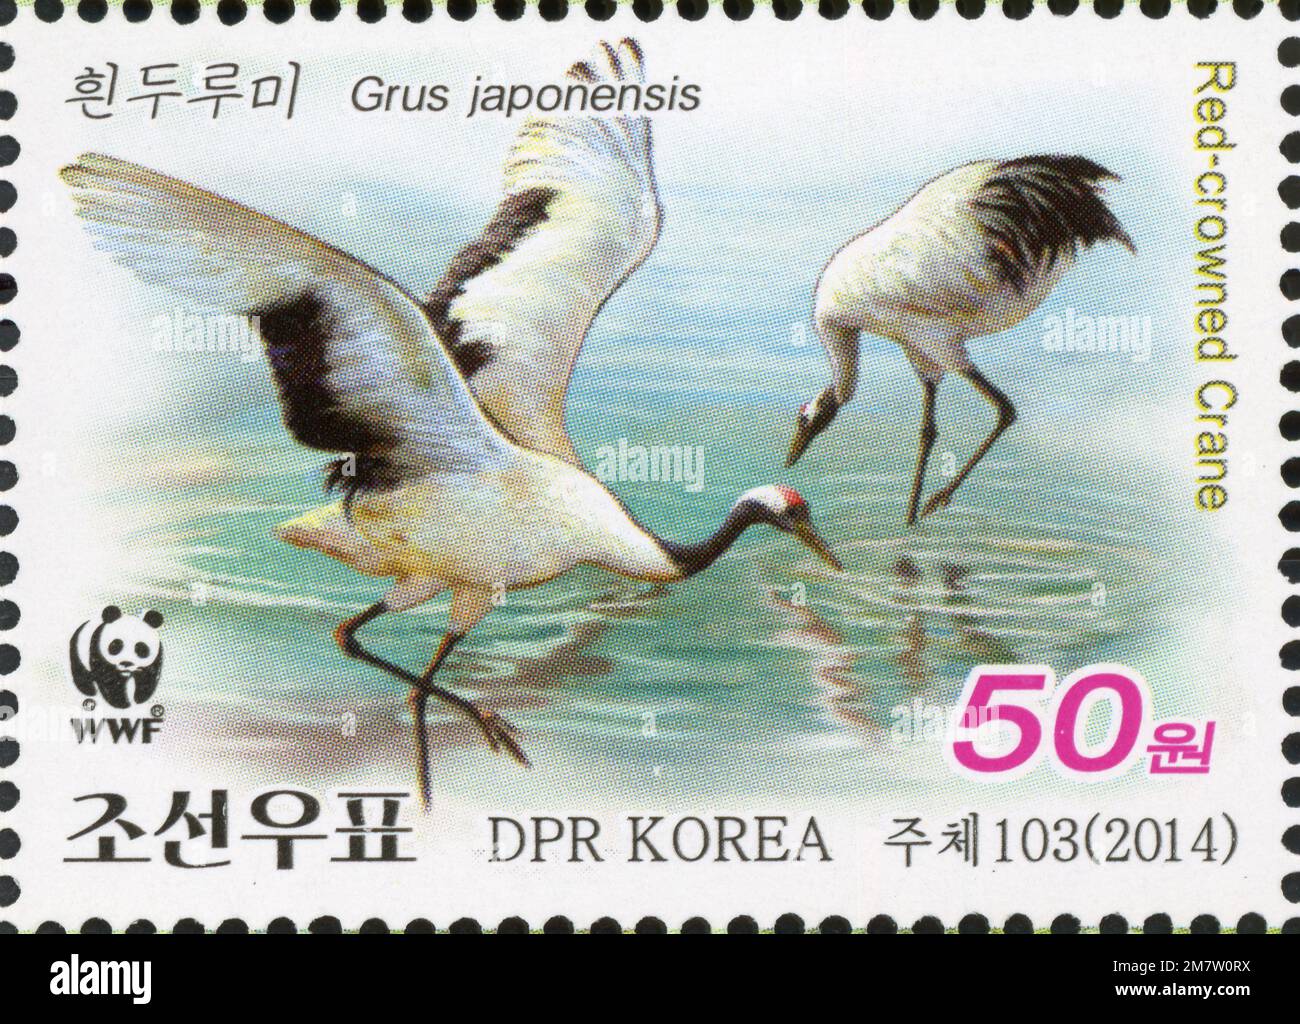 2014 Set di timbri per la Corea del Nord. WWF - Gru con corona rossa, Gru japonensis Foto Stock